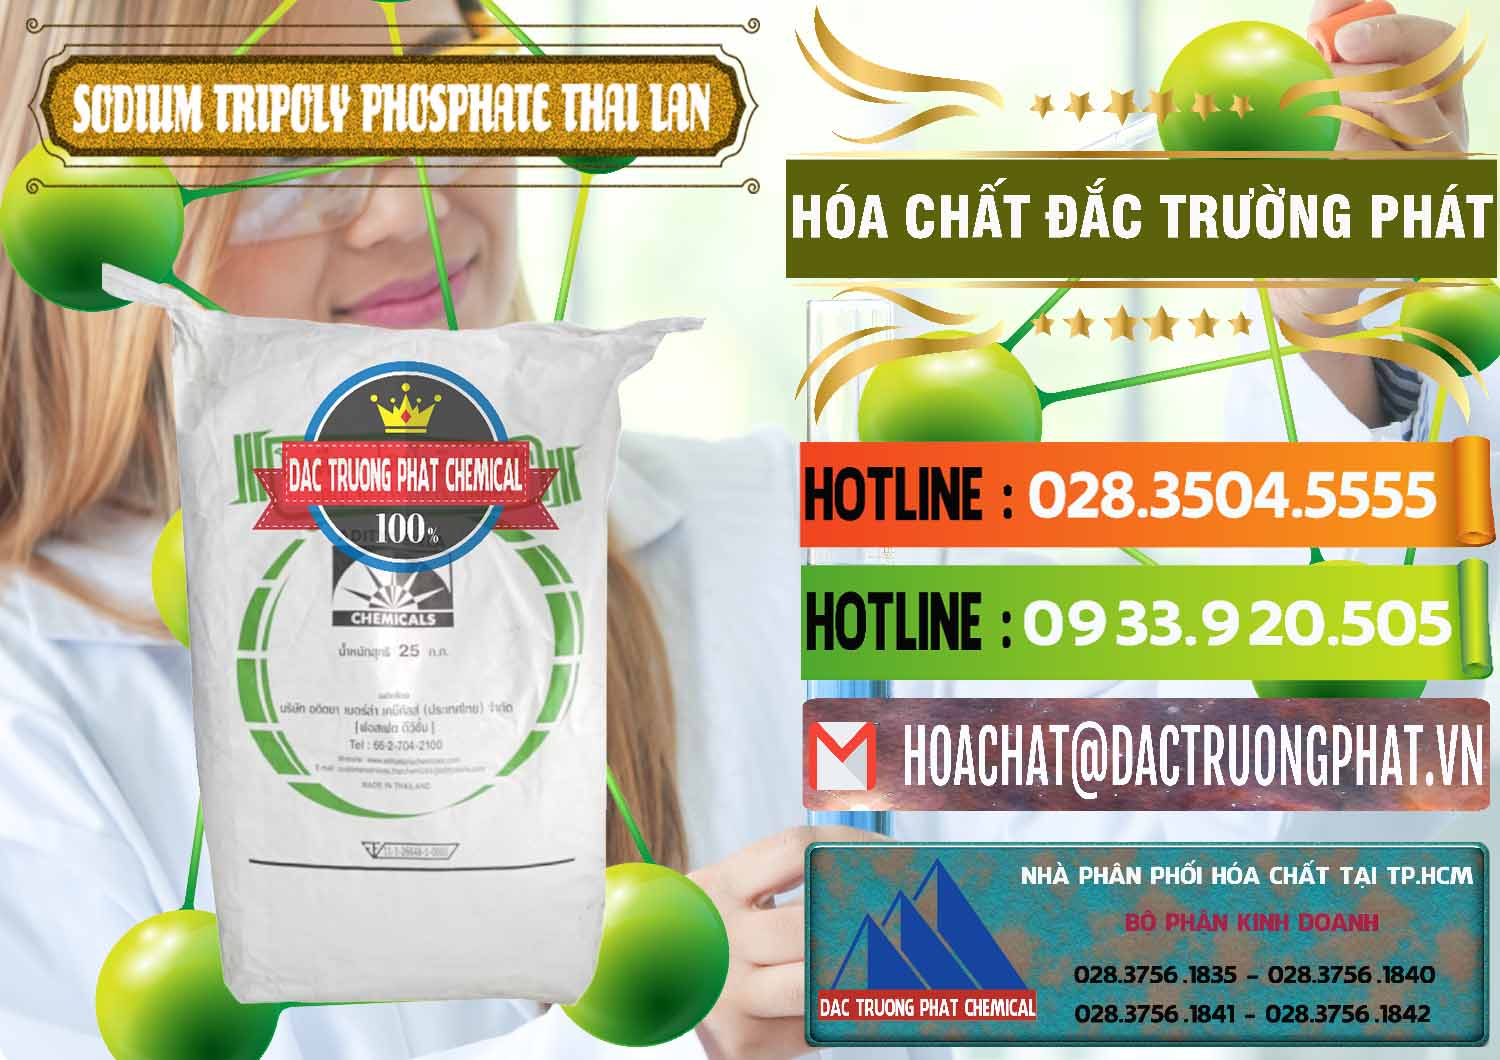 Chuyên phân phối _ bán Sodium Tripoly Phosphate - STPP Aditya Birla Grasim Thái Lan Thailand - 0421 - Công ty chuyên bán ( cung cấp ) hóa chất tại TP.HCM - cungcaphoachat.com.vn